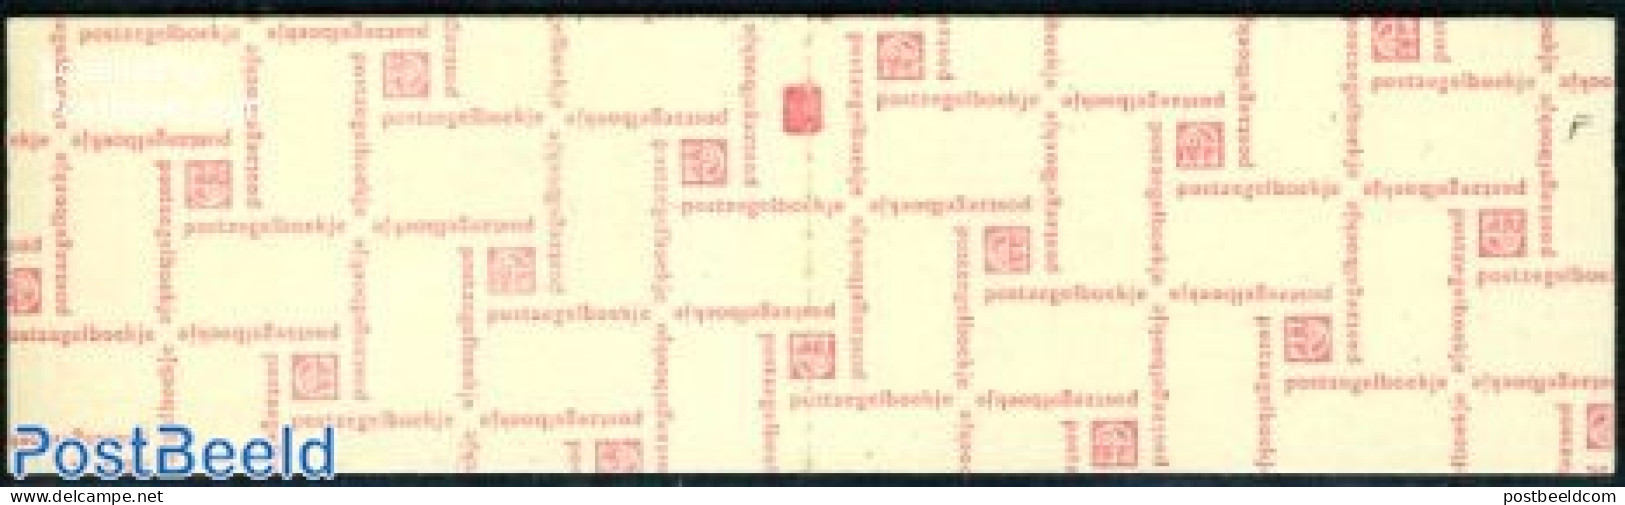 Netherlands 1969 4x1+8x12c Booklet Phosphor, Count Block, Hebt U Ie, Mint NH, Stamp Booklets - Ongebruikt